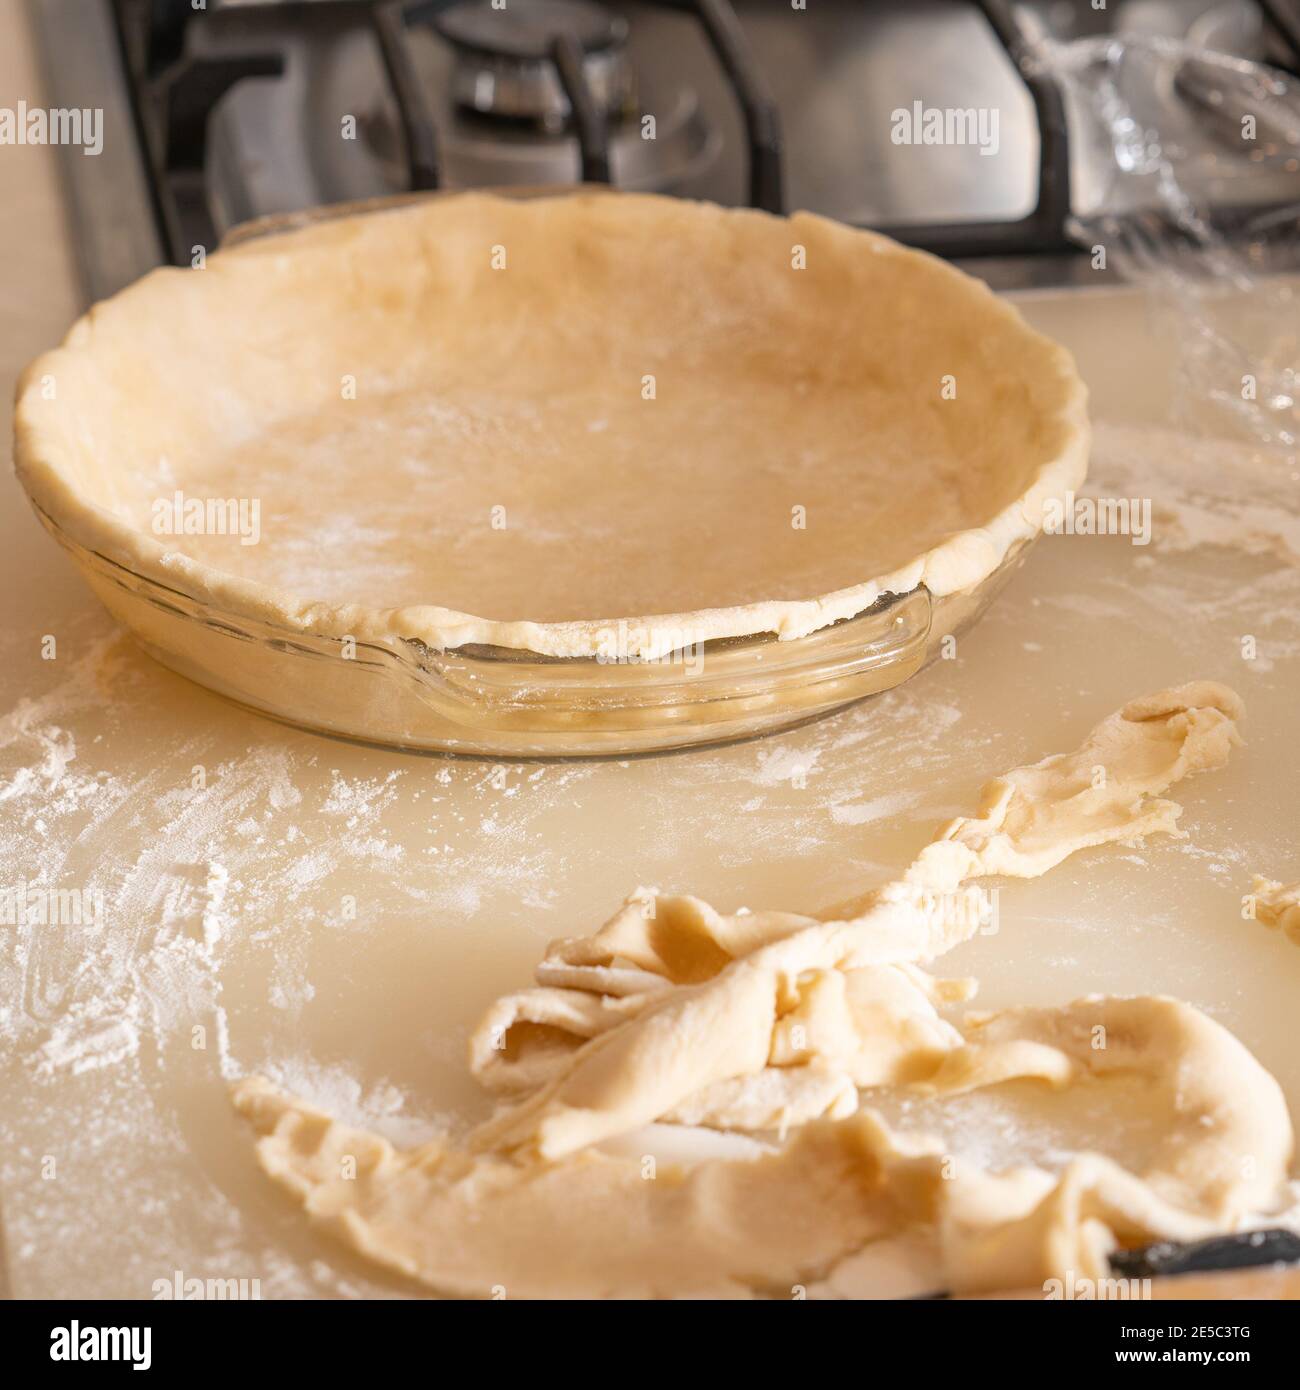 shaping pie crust Stock Photo